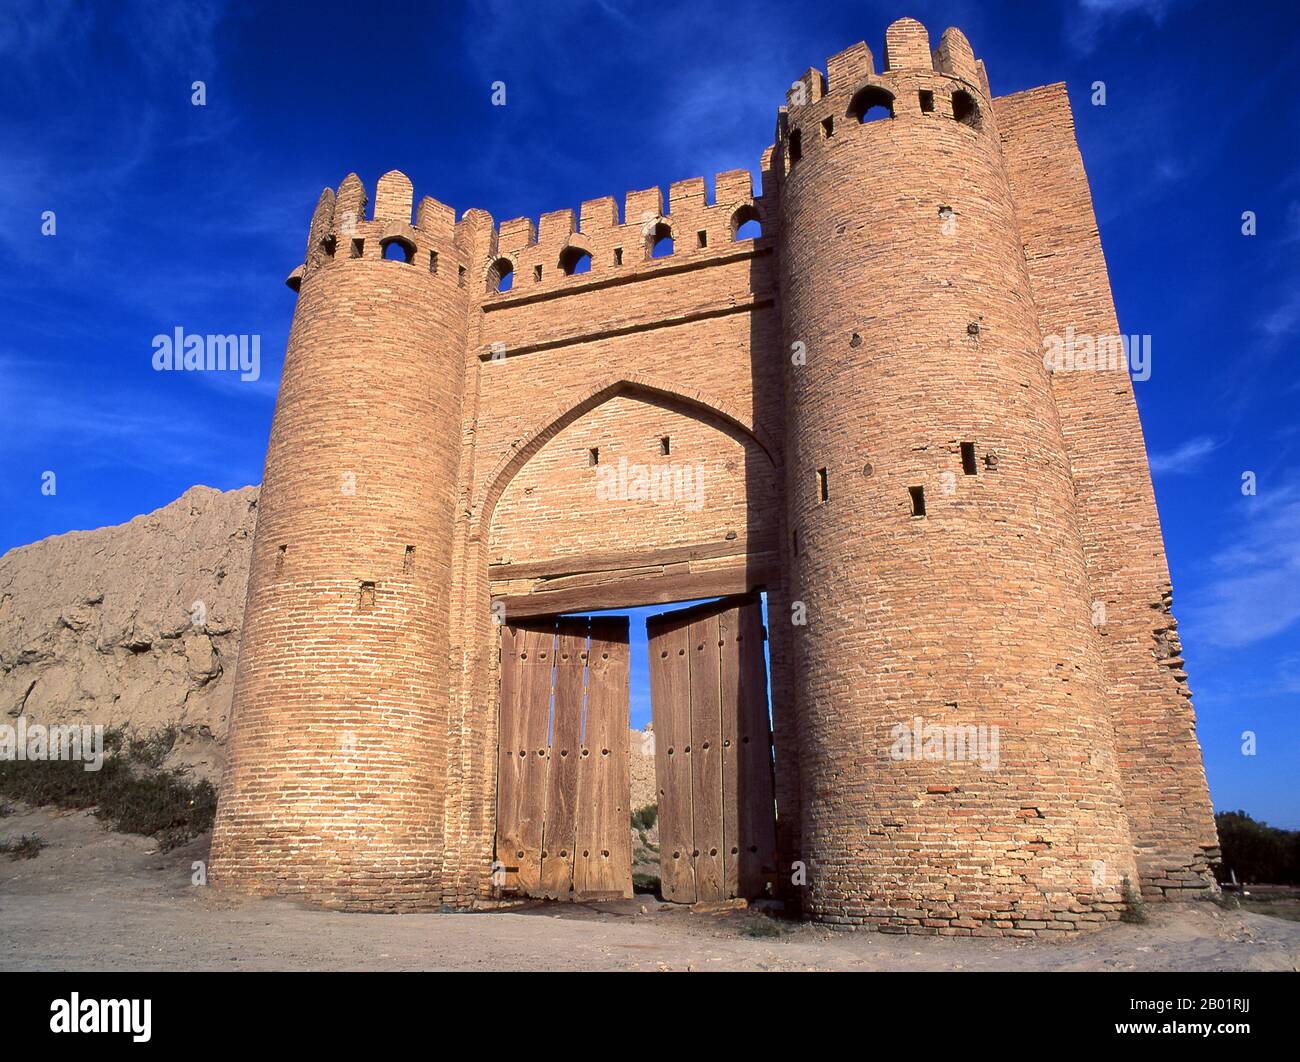 Usbekistan: Die alte Stadtmauer und das Tallipach-Tor aus dem 16. Jahrhundert, Buchara. Das Tallipach-Tor ist eines von nur zwei Toren, die von den alten Stadtmauern von Buchara übrig geblieben sind. Irgendwann gab es 11 Tore. Das Tor stammt aus dem 16. Jahrhundert. Buchara wurde 500 v. Chr. in der heutigen Arche gegründet. Die Buchara-Oase war jedoch schon lange zuvor bewohnt. Die Stadt war eines der wichtigsten Zentren der persischen Zivilisation seit ihren Anfängen im 6. Jahrhundert v. Chr.. Ab dem 6. Jahrhundert n. Chr. kamen nach und nach Turksprecher hinzu. Stockfoto